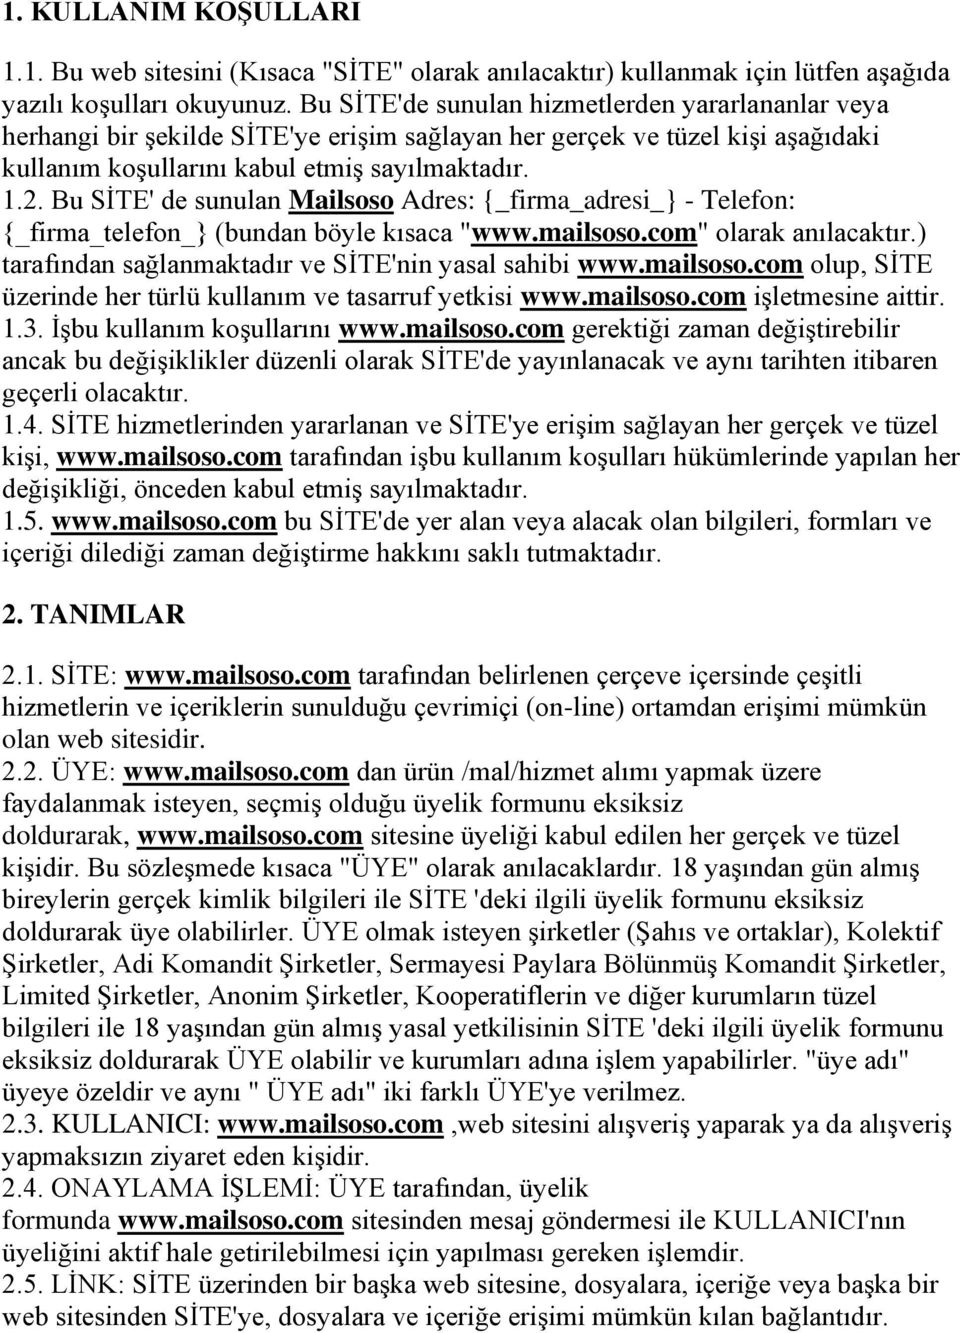 Bu SİTE' de sunulan Mailsoso Adres: {_firma_adresi_} - Telefon: {_firma_telefon_} (bundan böyle kısaca "www.mailsoso.com" olarak anılacaktır.) tarafından sağlanmaktadır ve SİTE'nin yasal sahibi www.